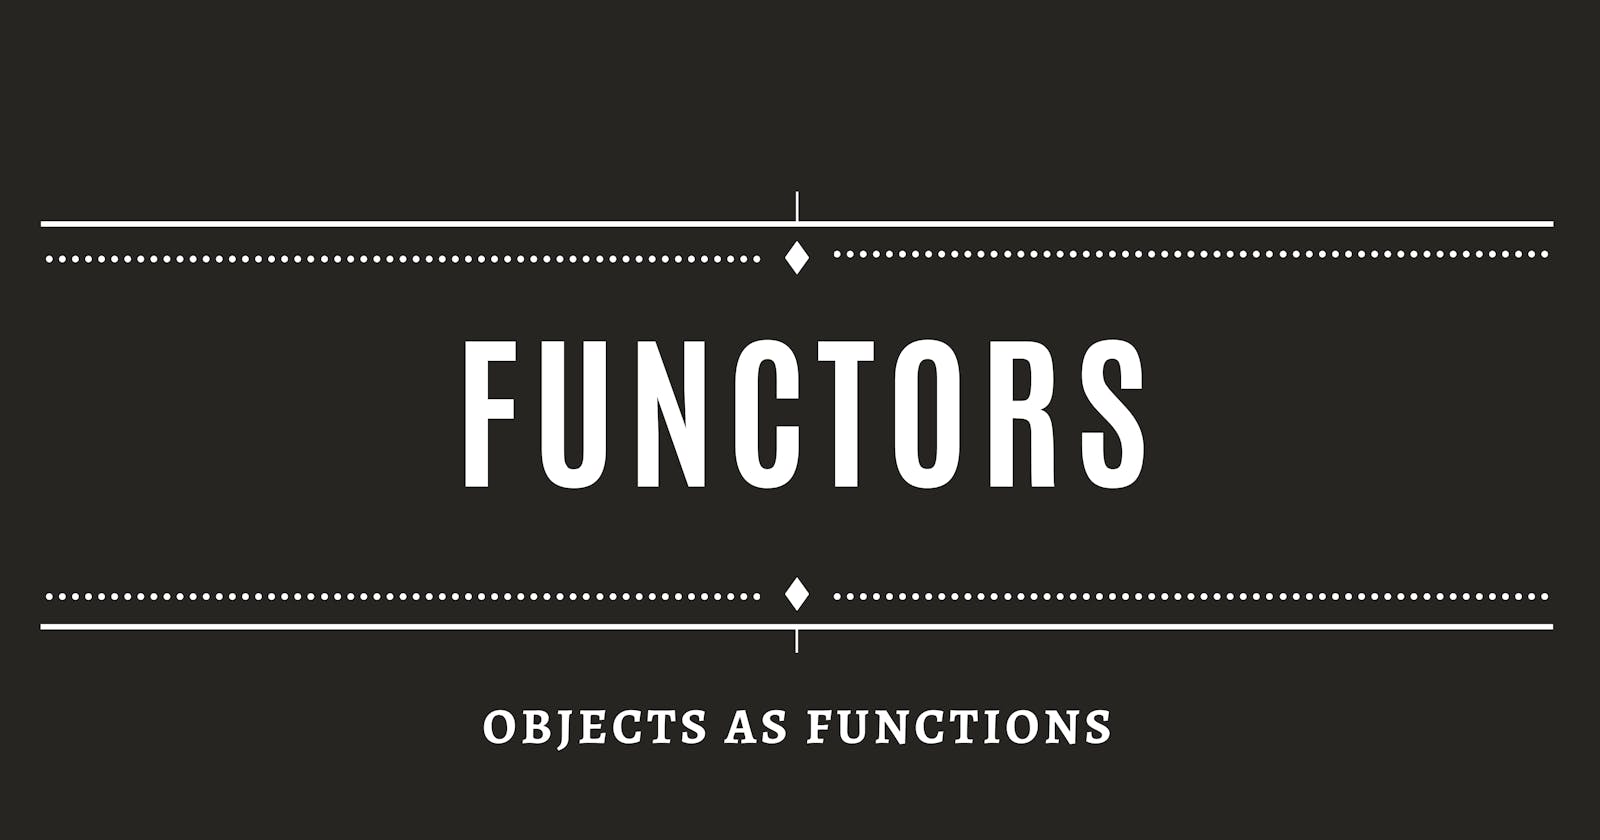 Functors! Not functions